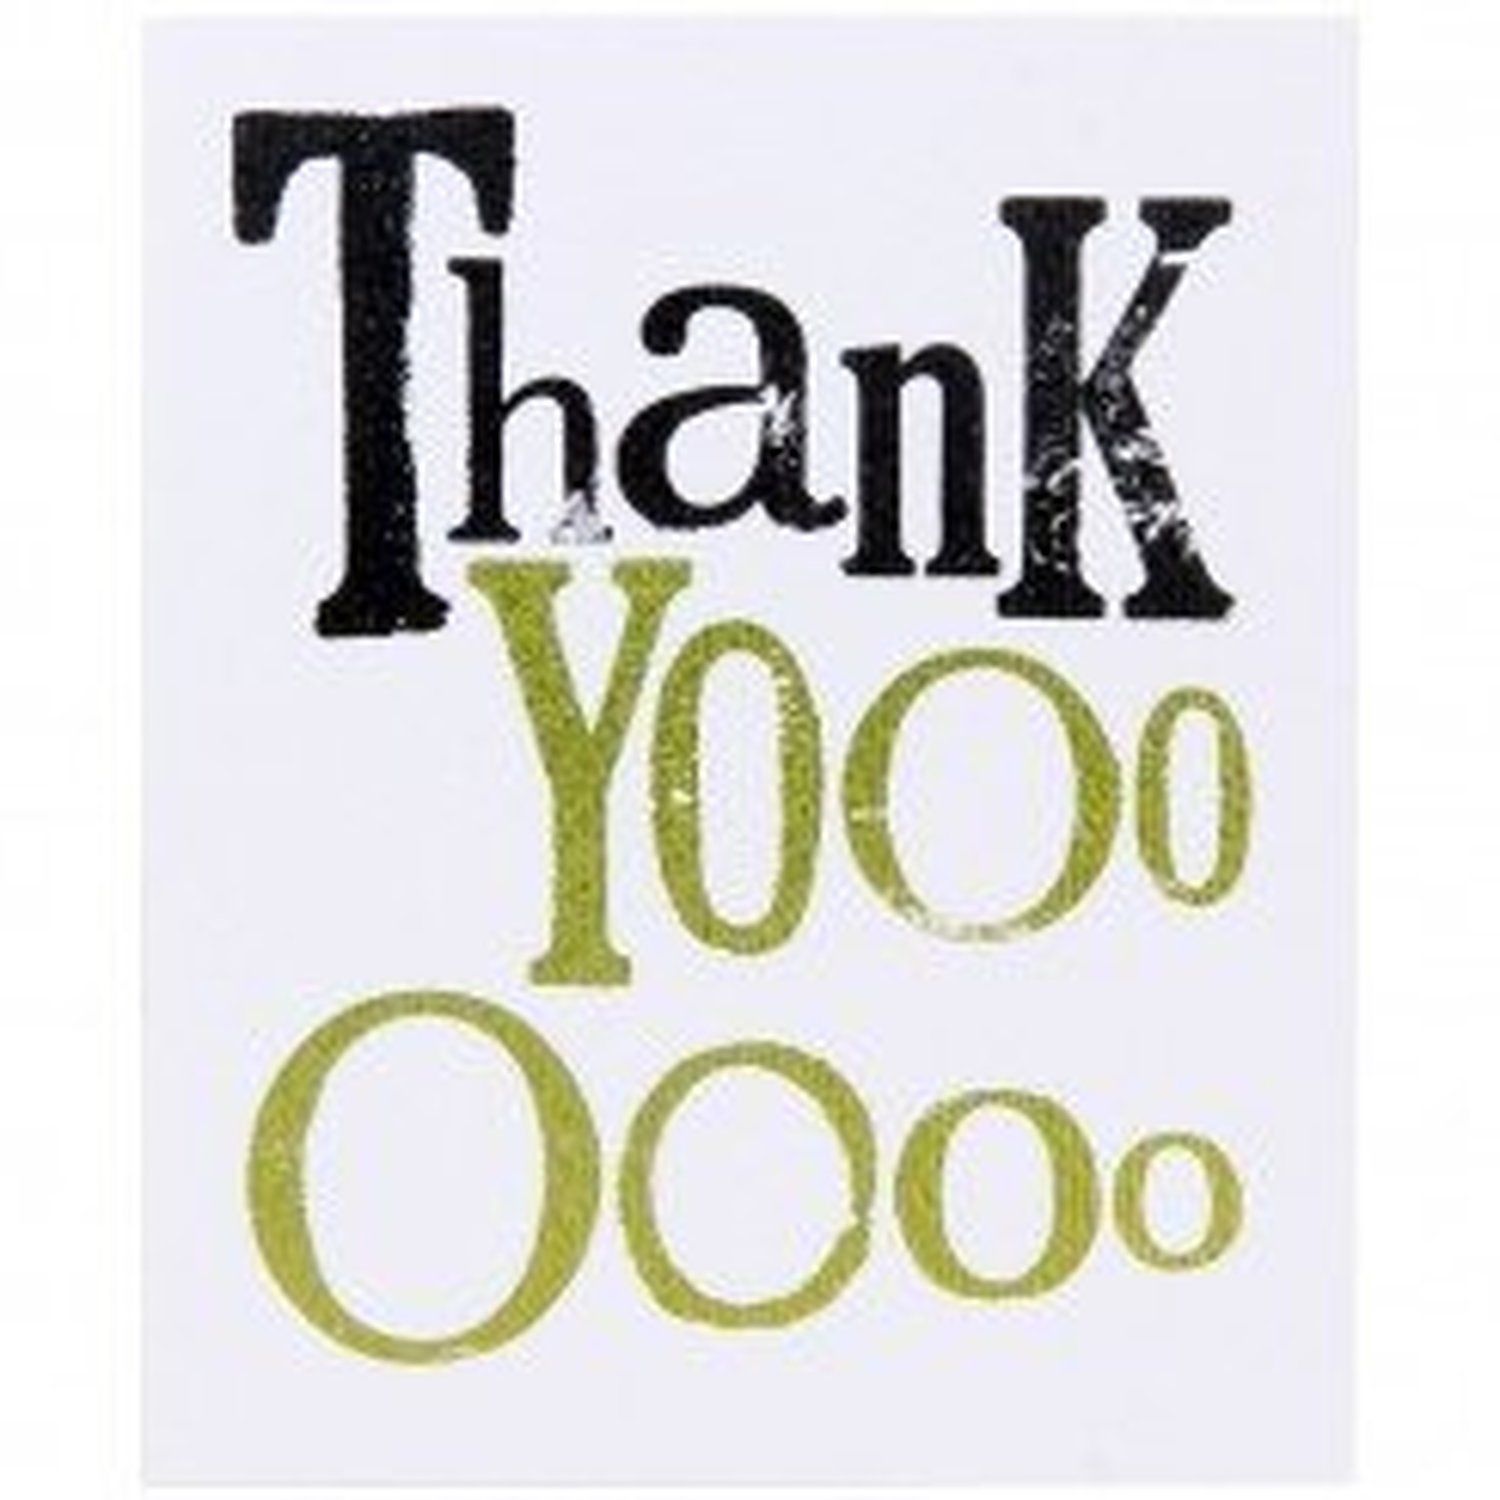 Felicitare - Thank Yooo Oooo | Really Good